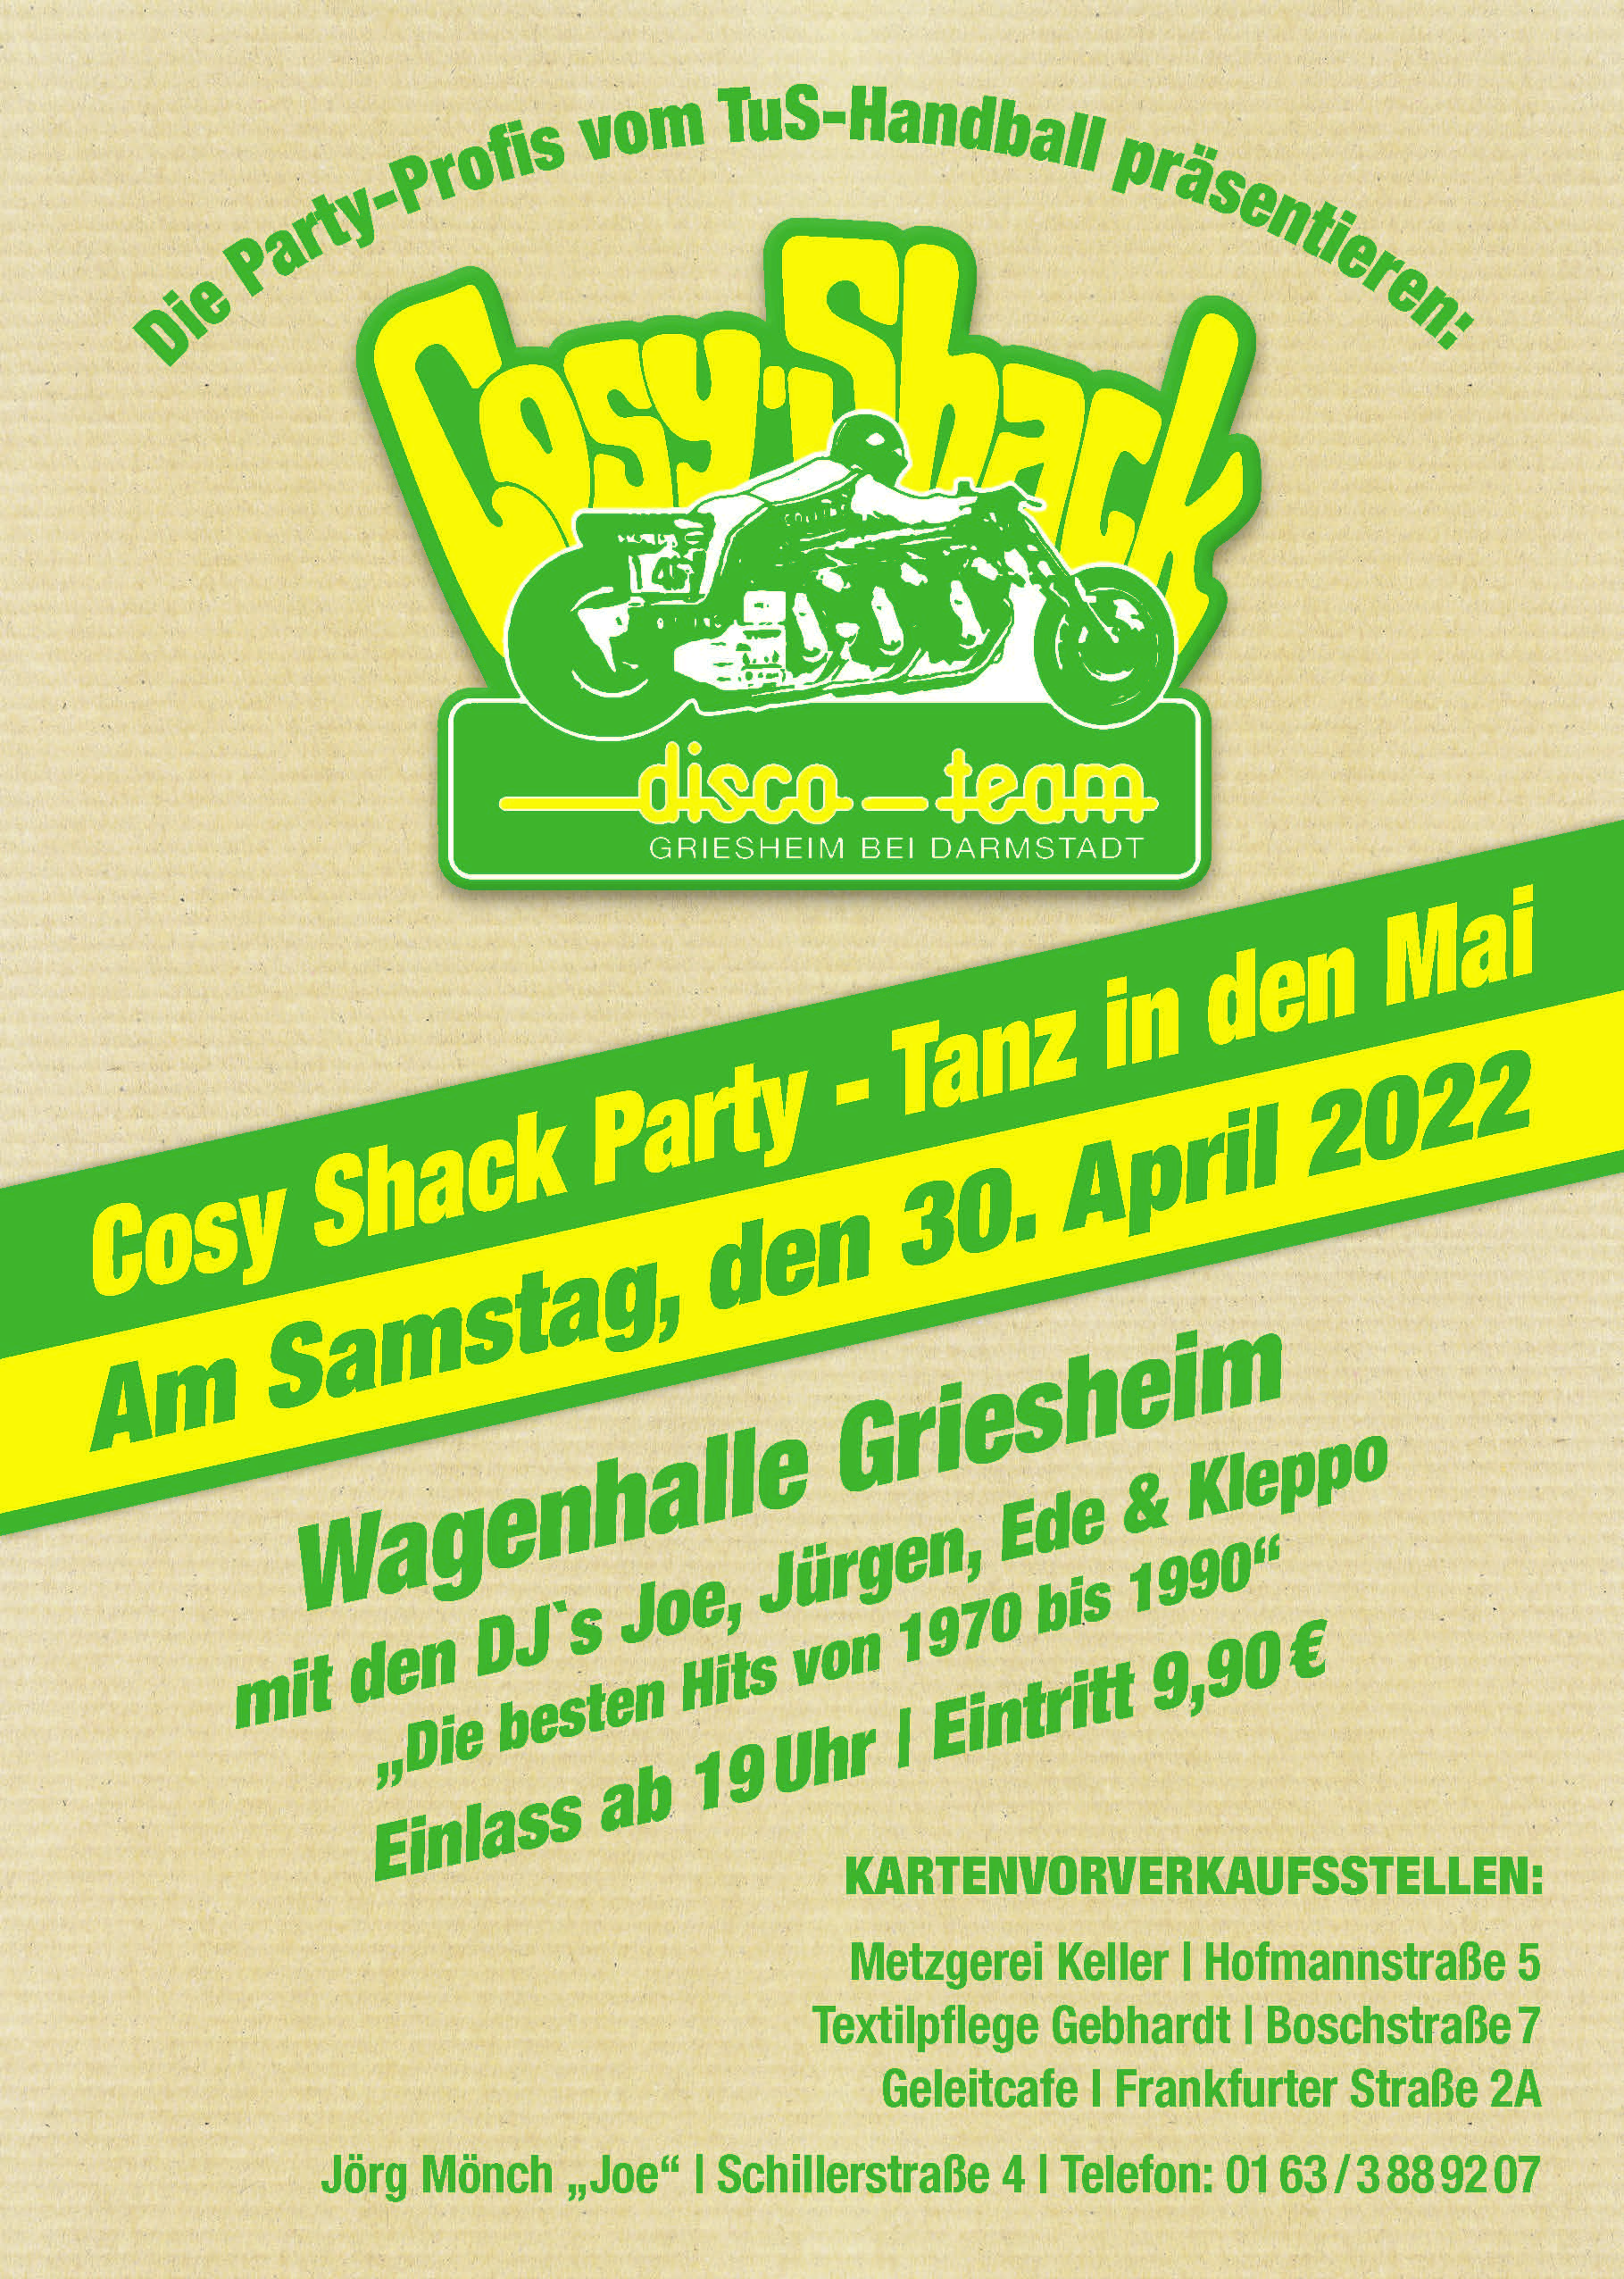 Cosy-Shack präsentiert: Tanz in den Mai 2020 in der Wagenhalle Griesheim